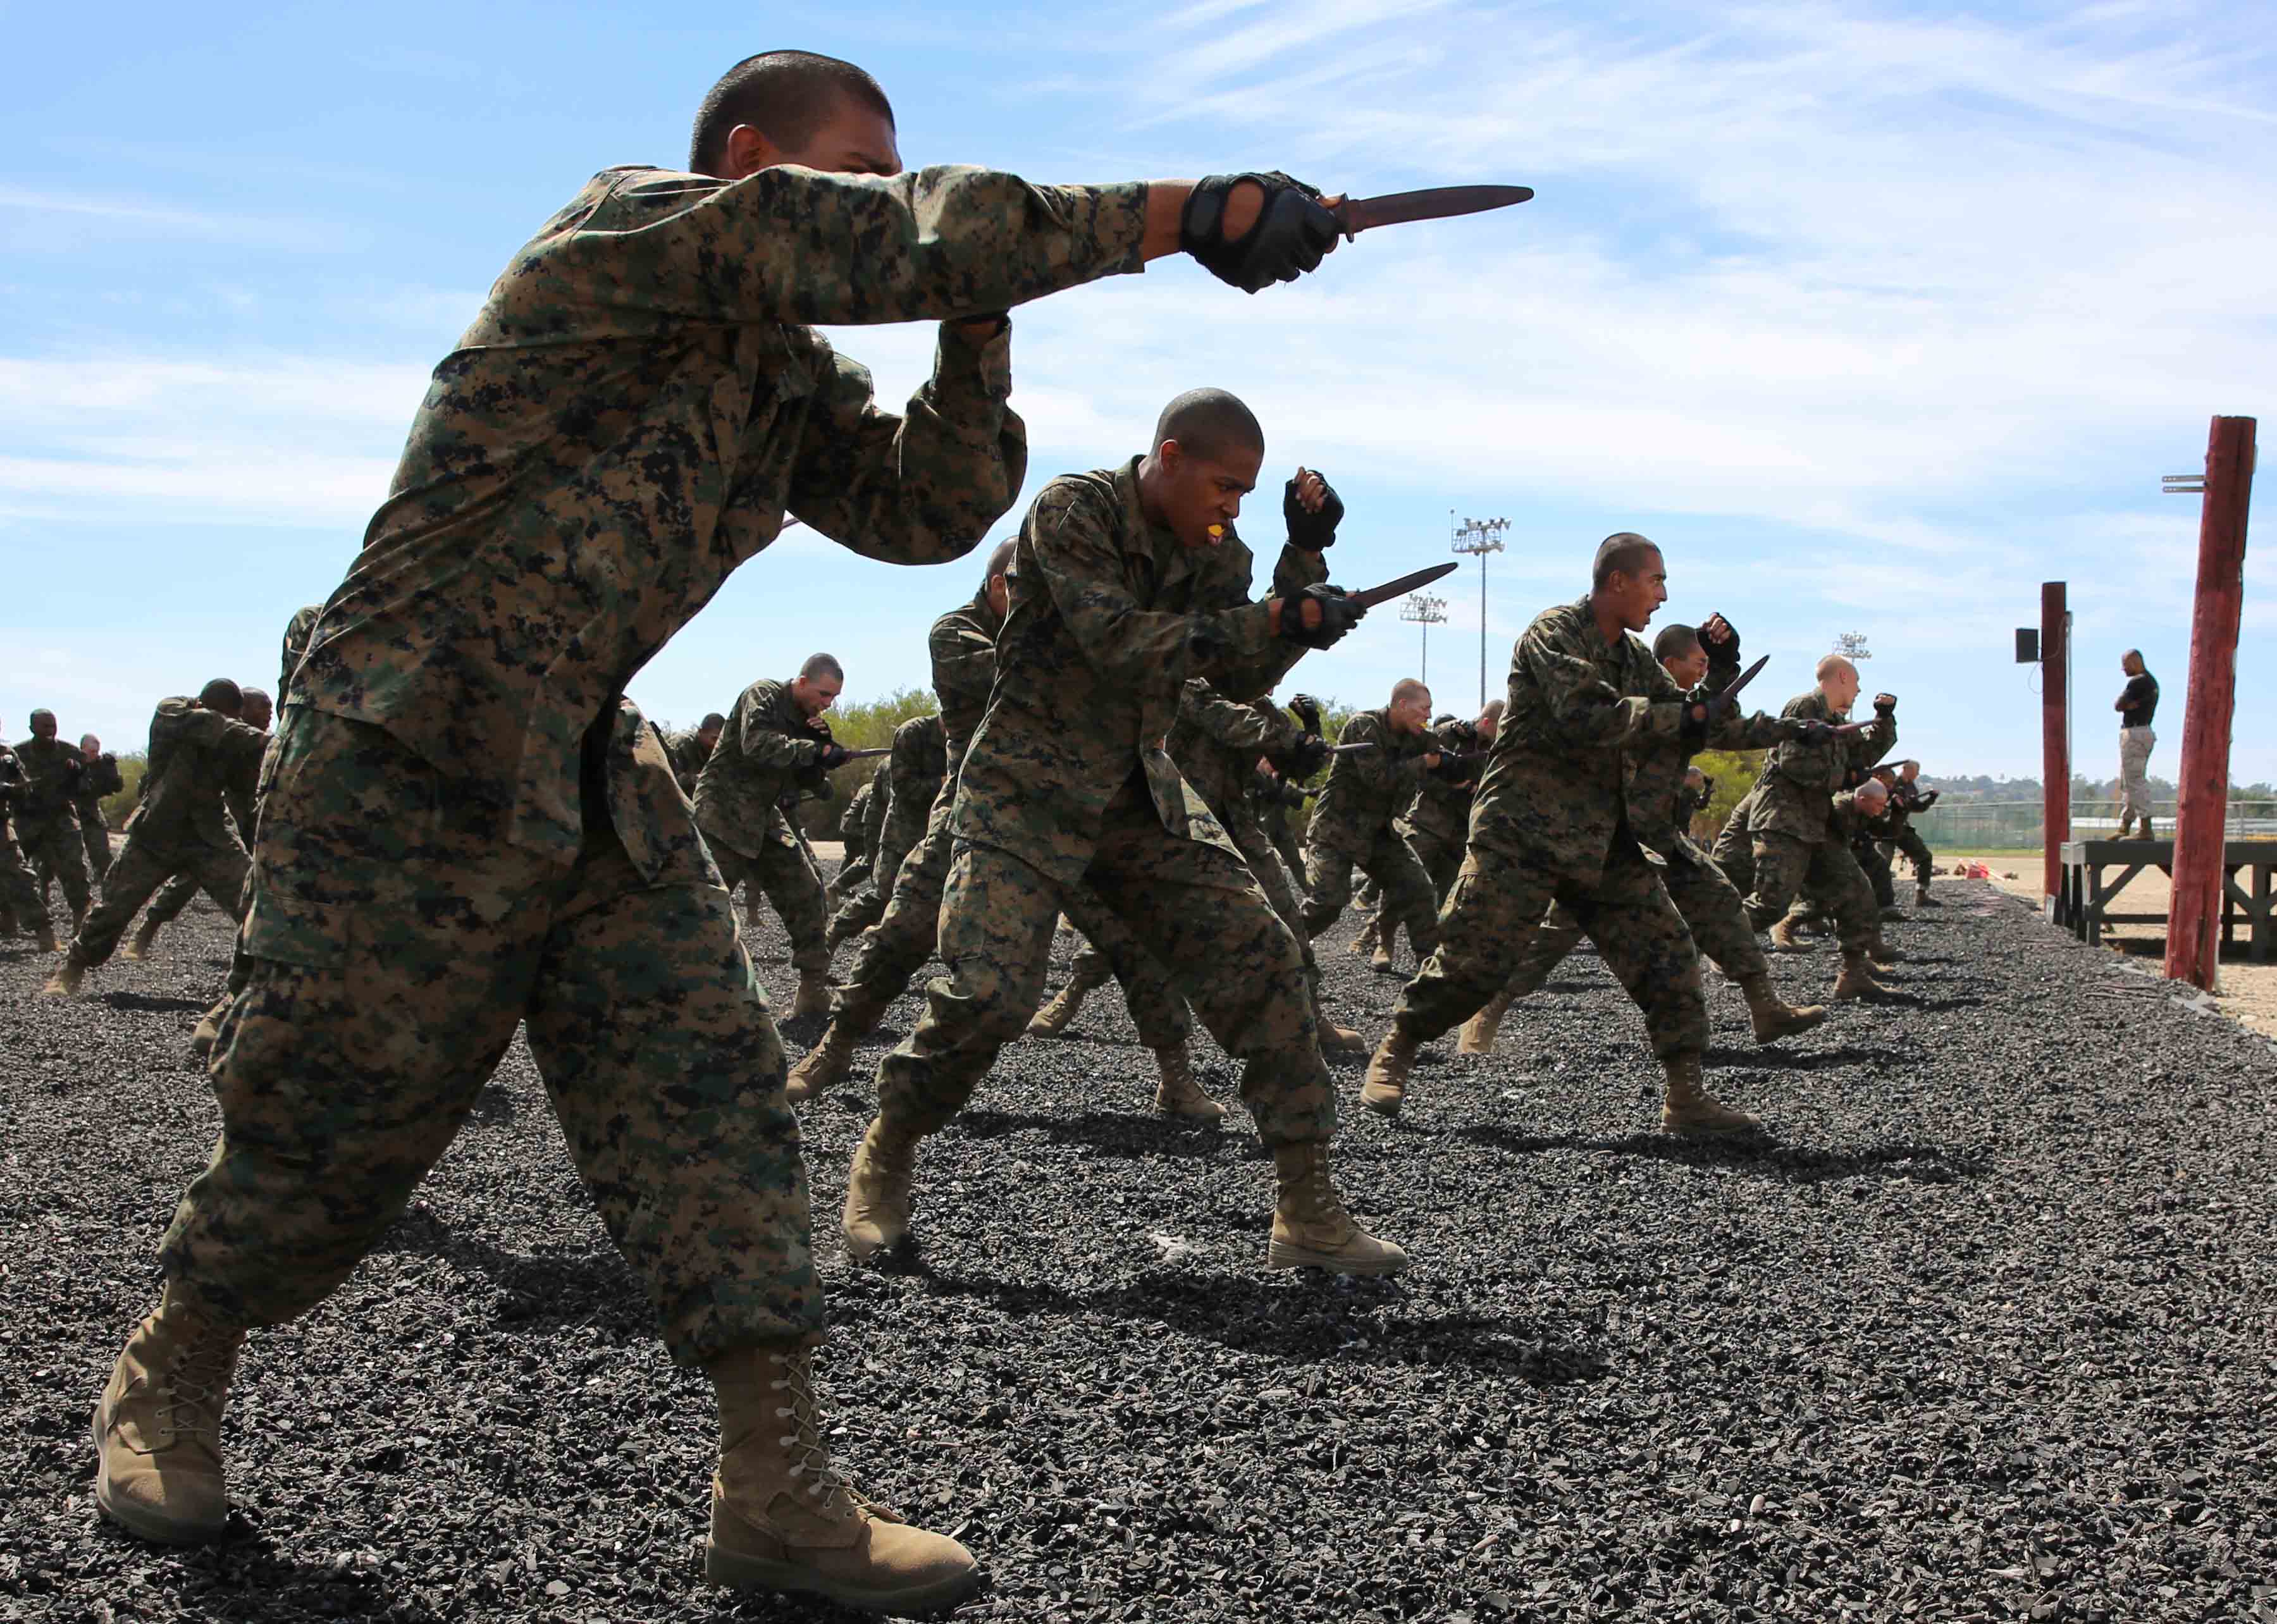 USMC Recruiting on X: Train like a Marine to fight like a Marine